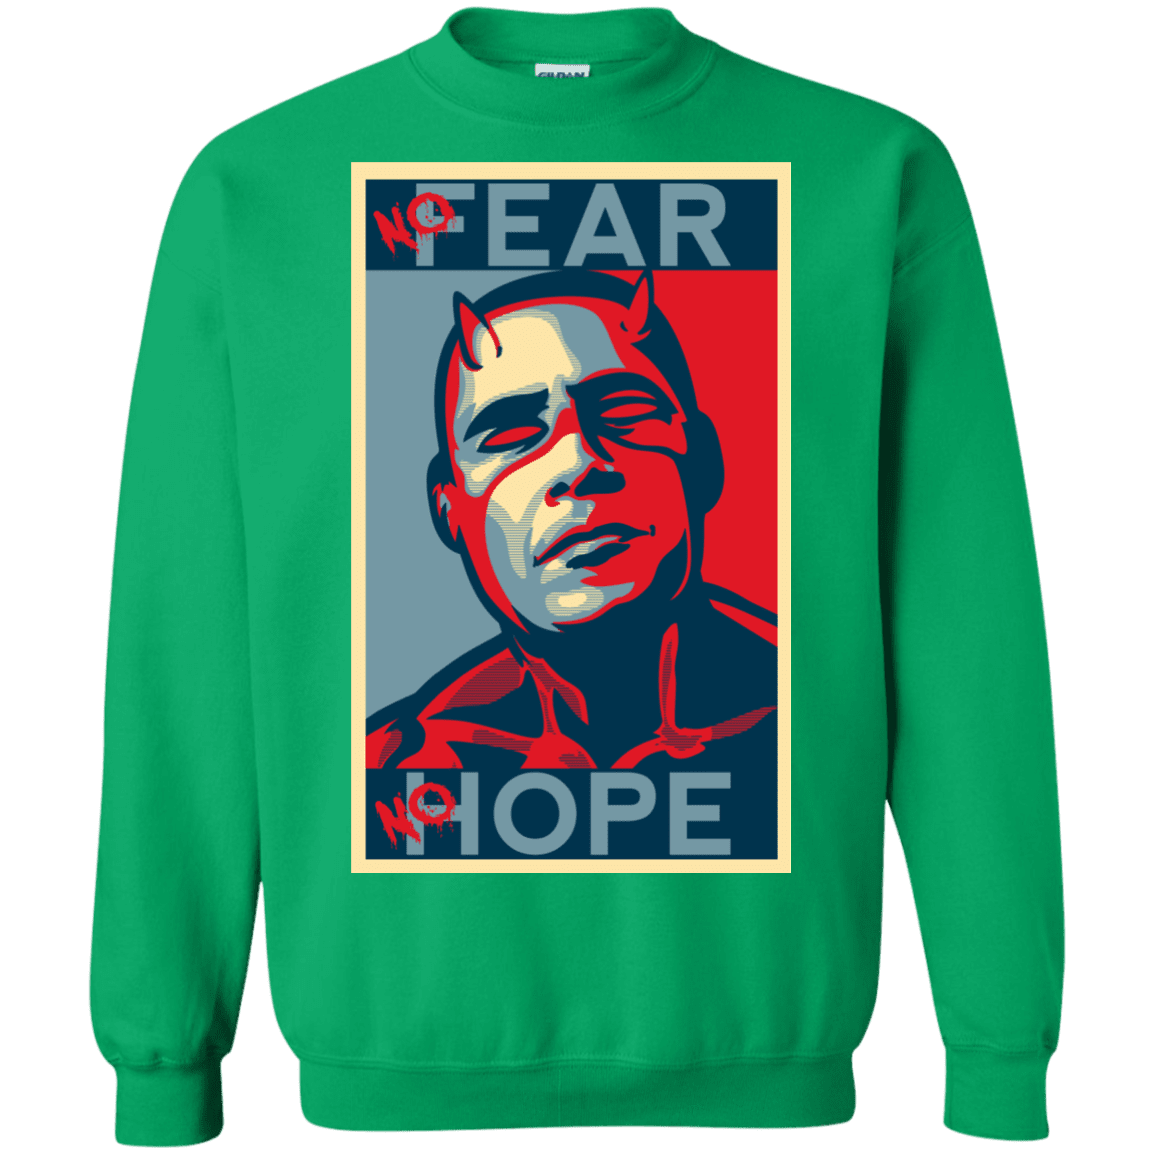 Sweatshirts Irish Green / S A man with no fear Crewneck Sweatshirt